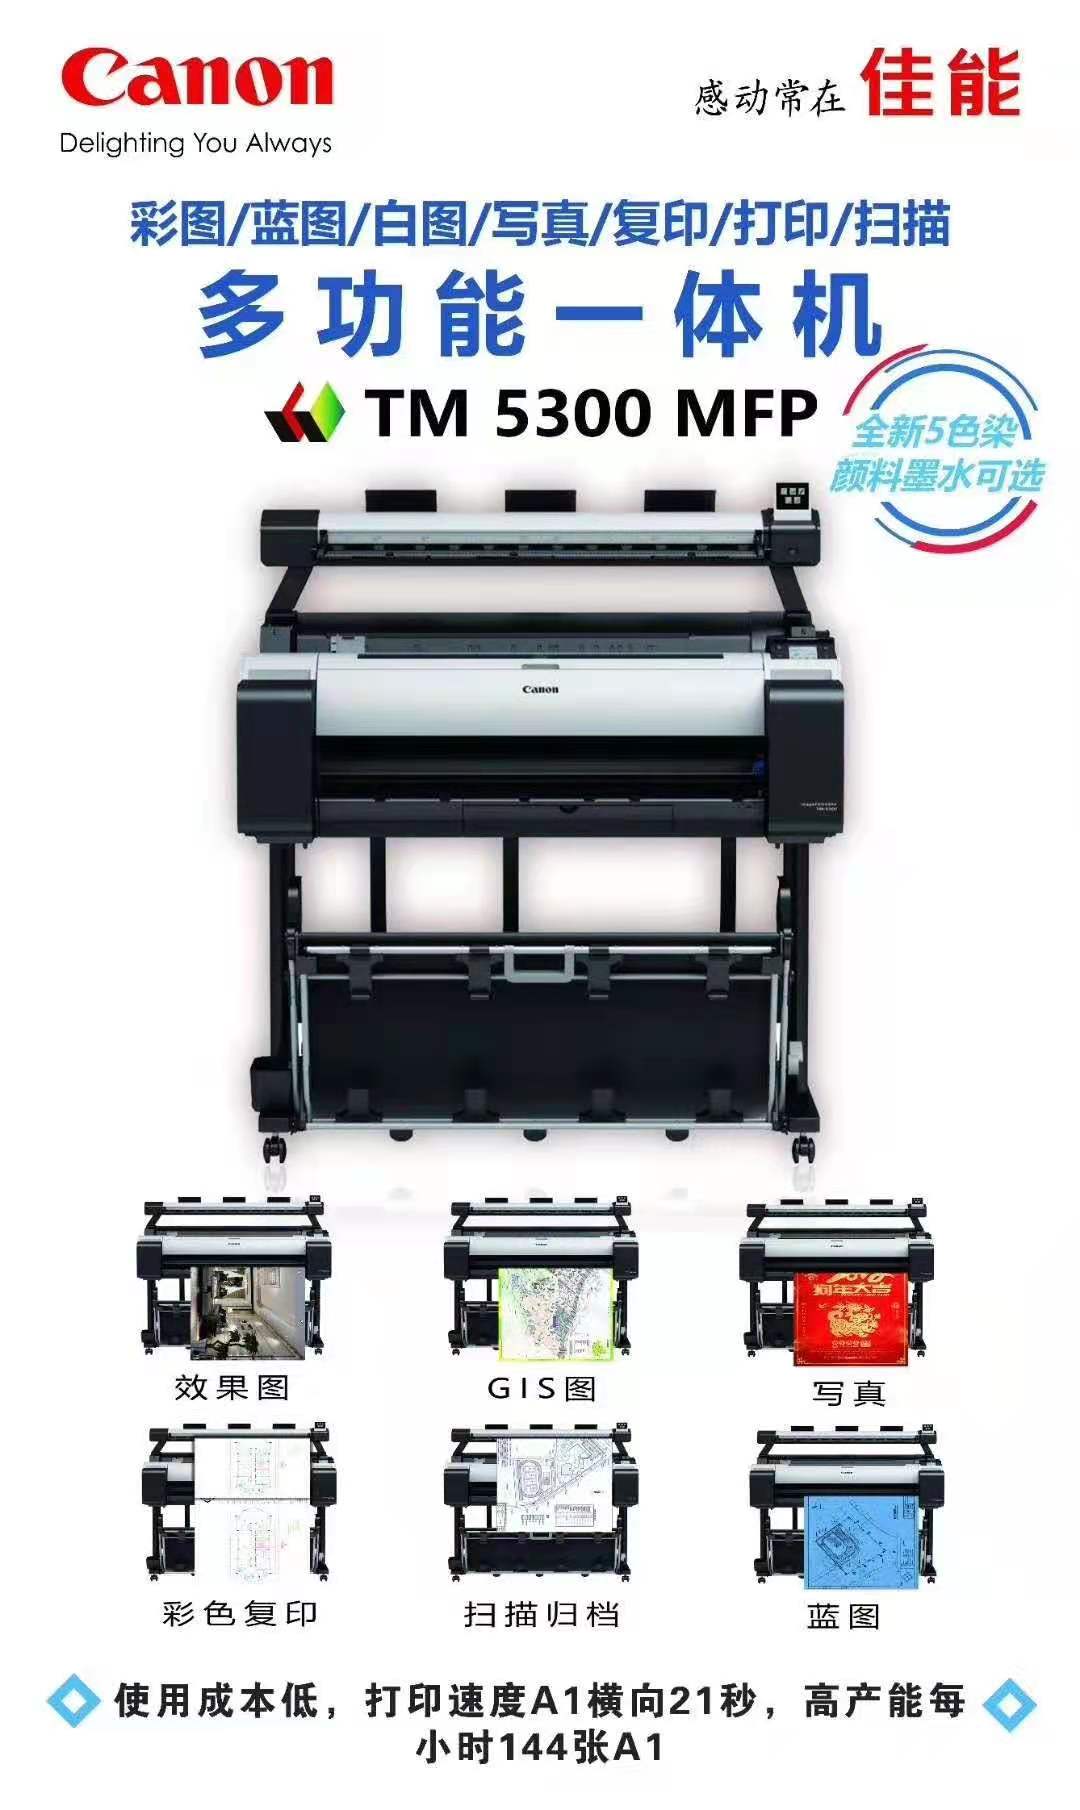 喷墨 彩色复印 打印复印一体机 扫描 大幅面 佳能TM5300 打印 多功能8